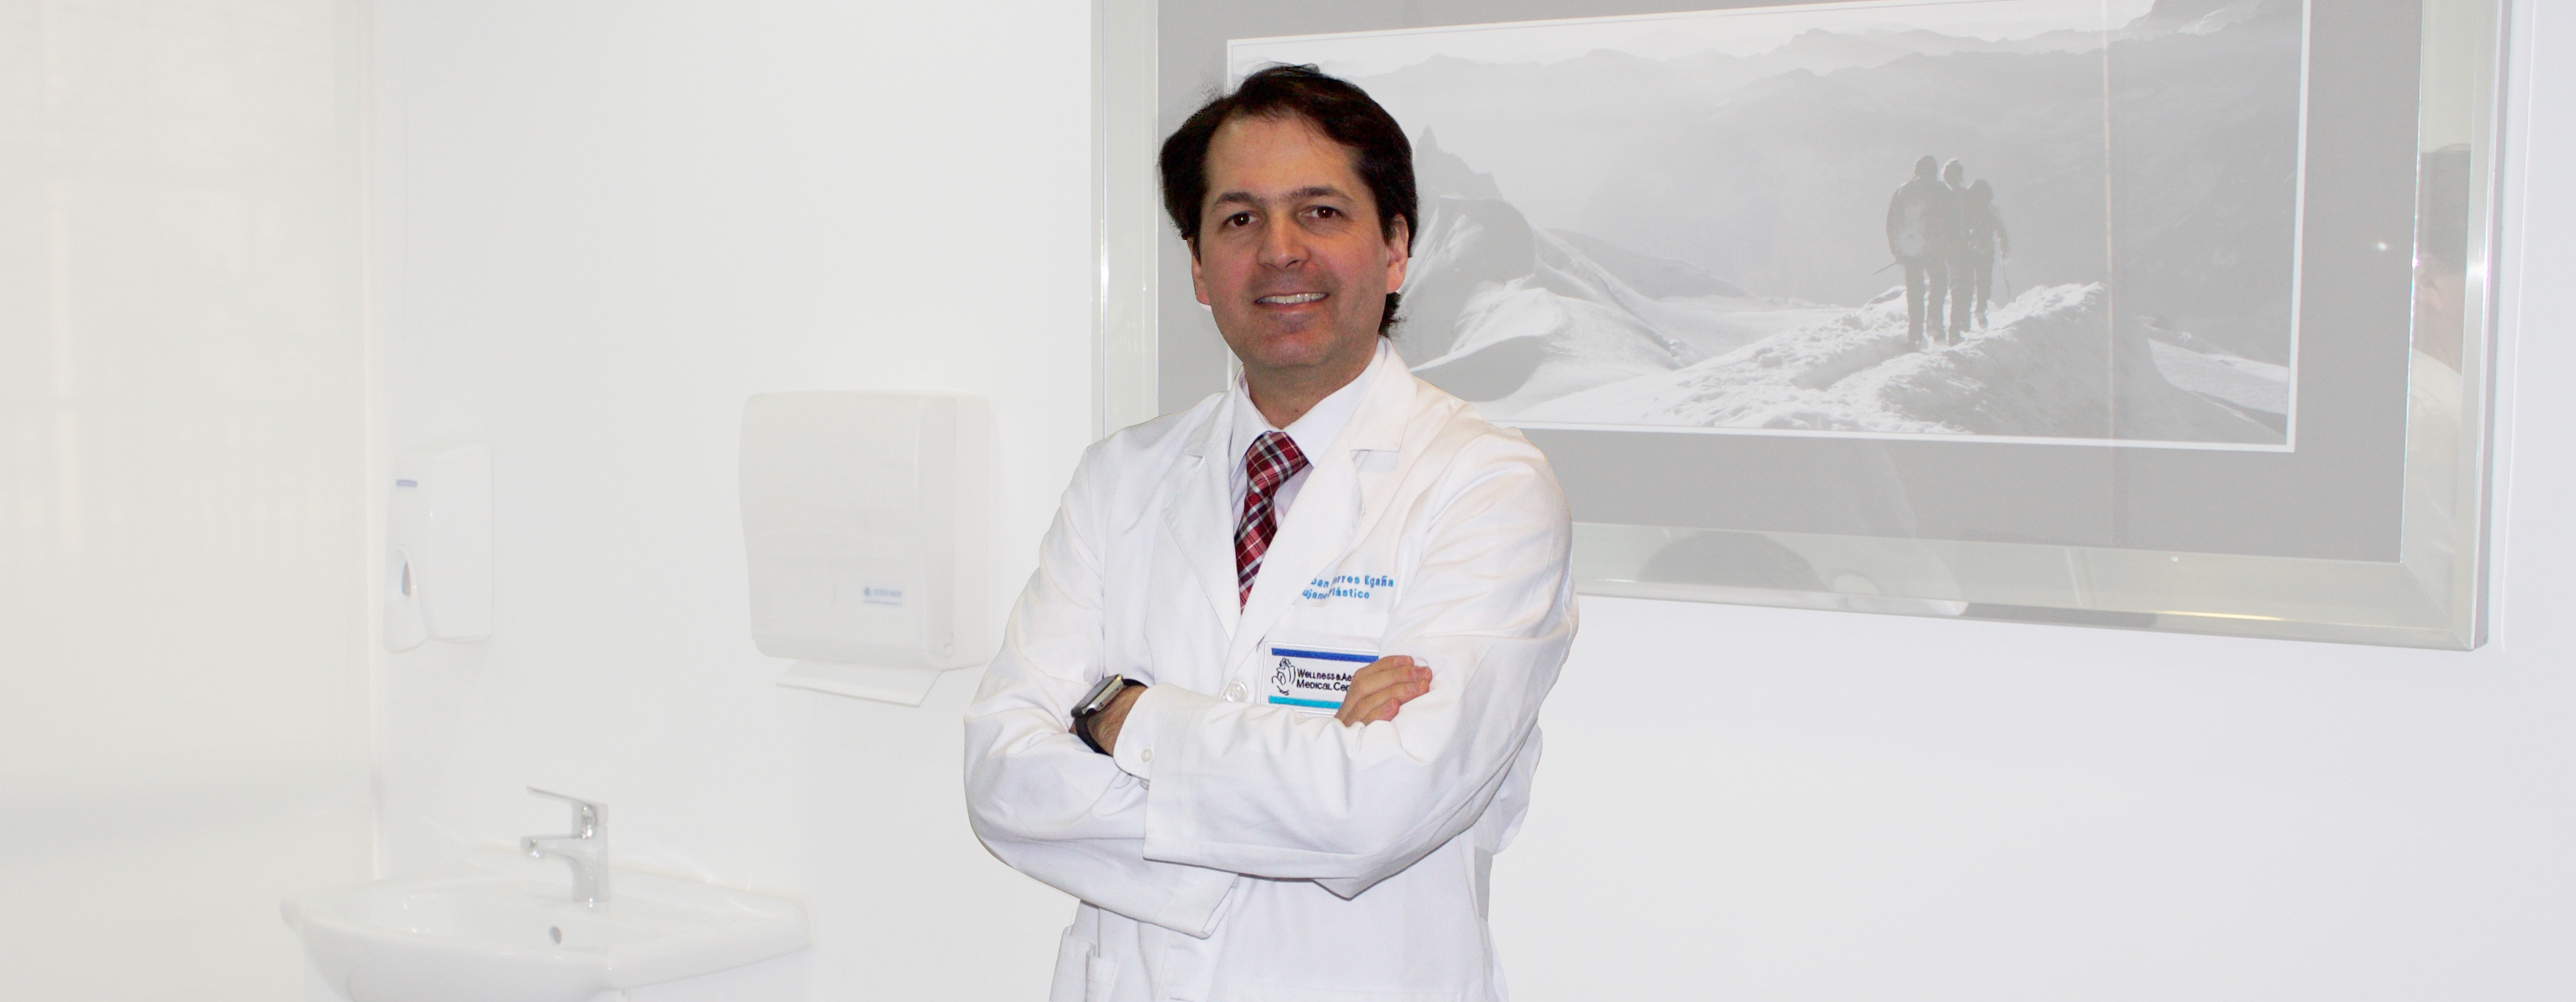 Acreditaciones Doctor Torres, Dr. Esteban Torres